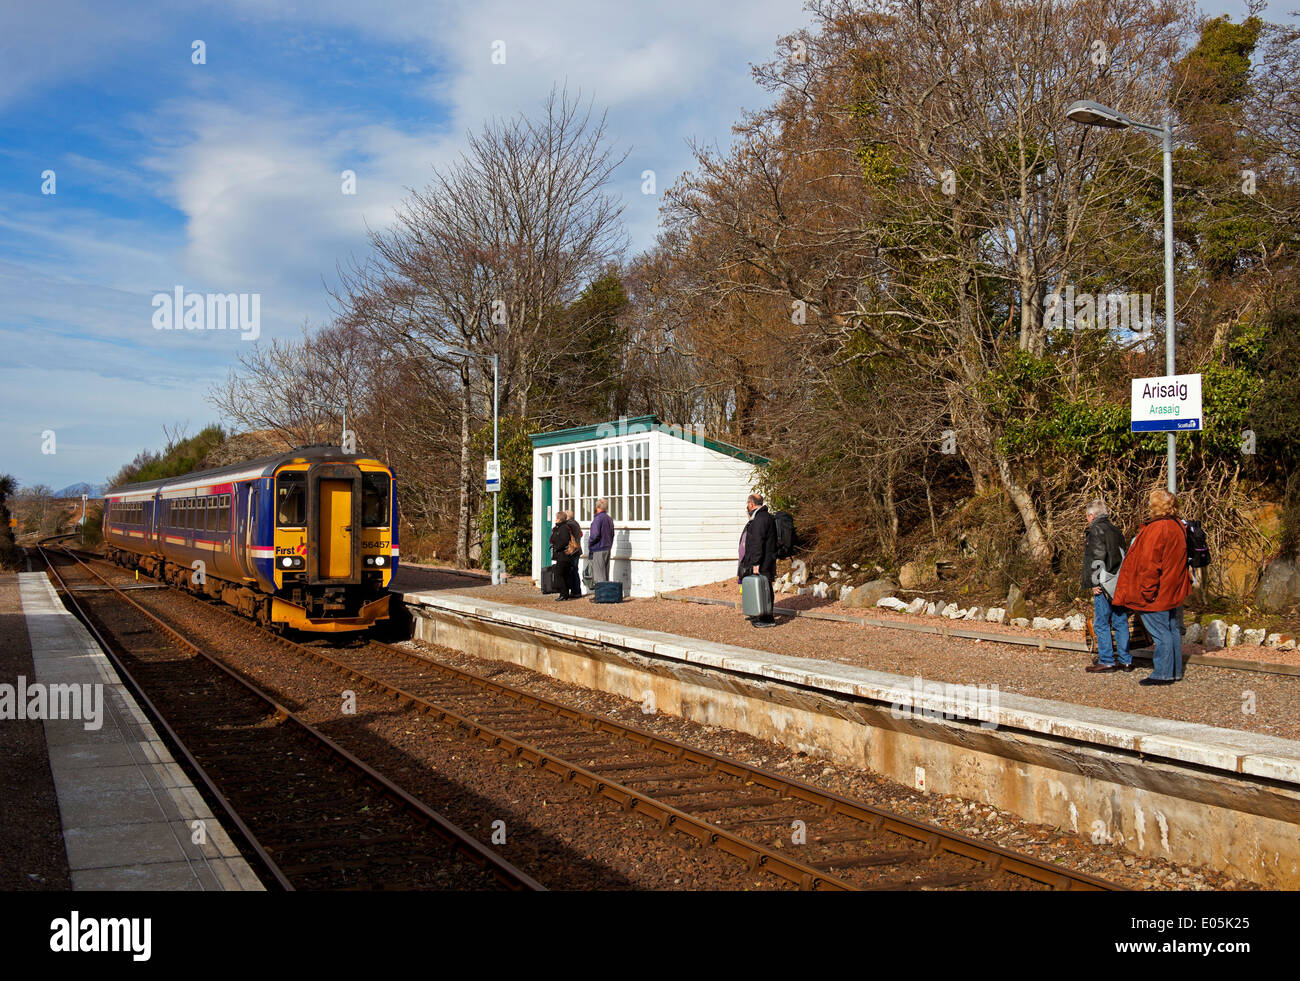 Arisaig railway station, West Highland Line, Lochaber Scotland Stock Photo